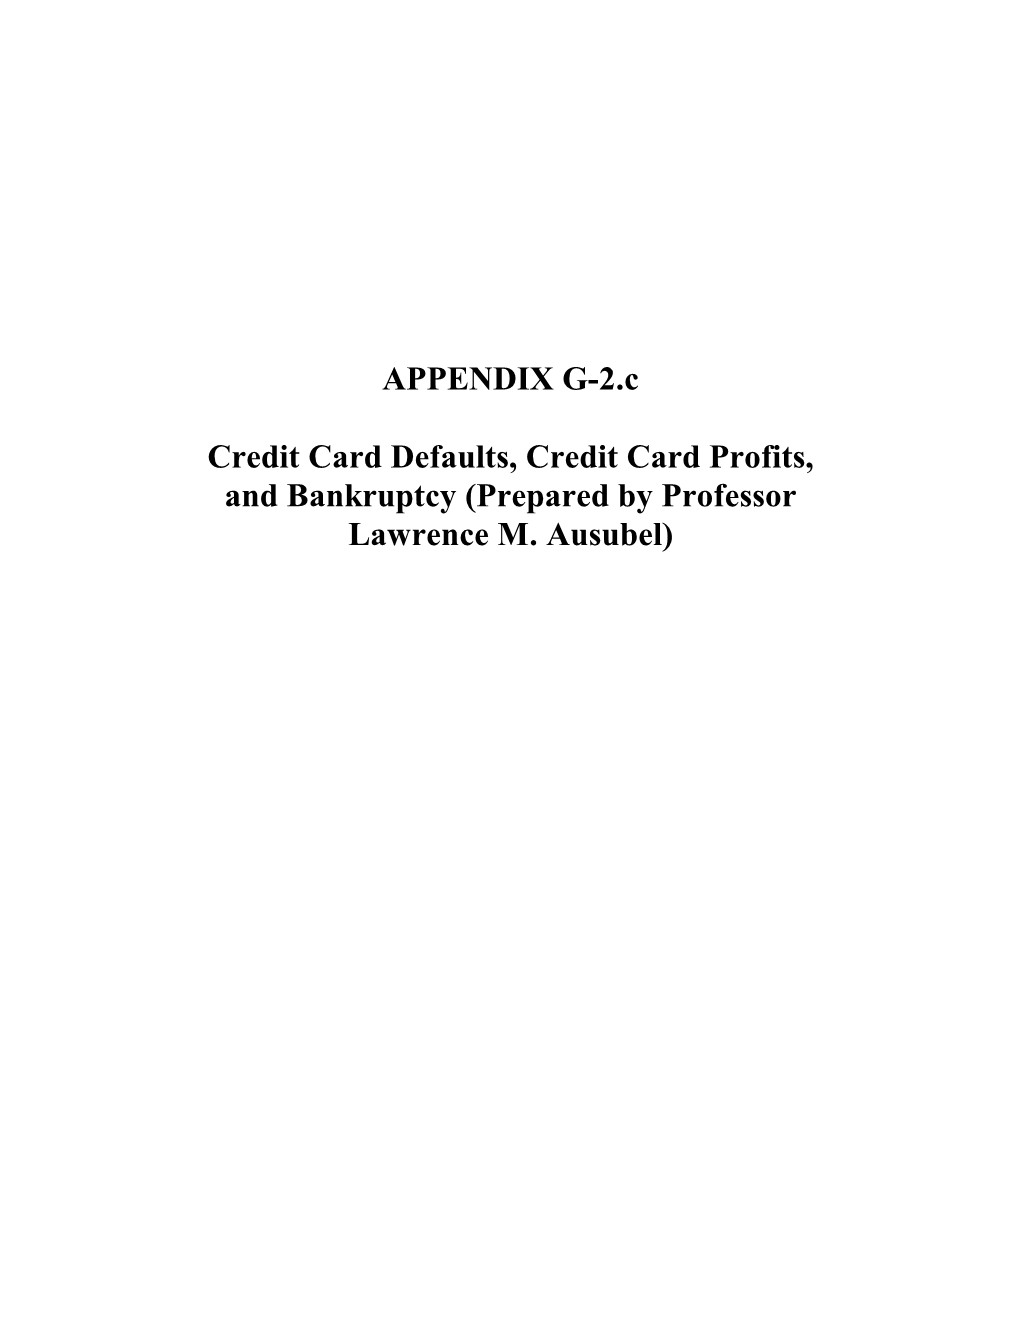 APPENDIX G-2.C Credit Card Defaults, Credit Card Profits, and Bankruptcy